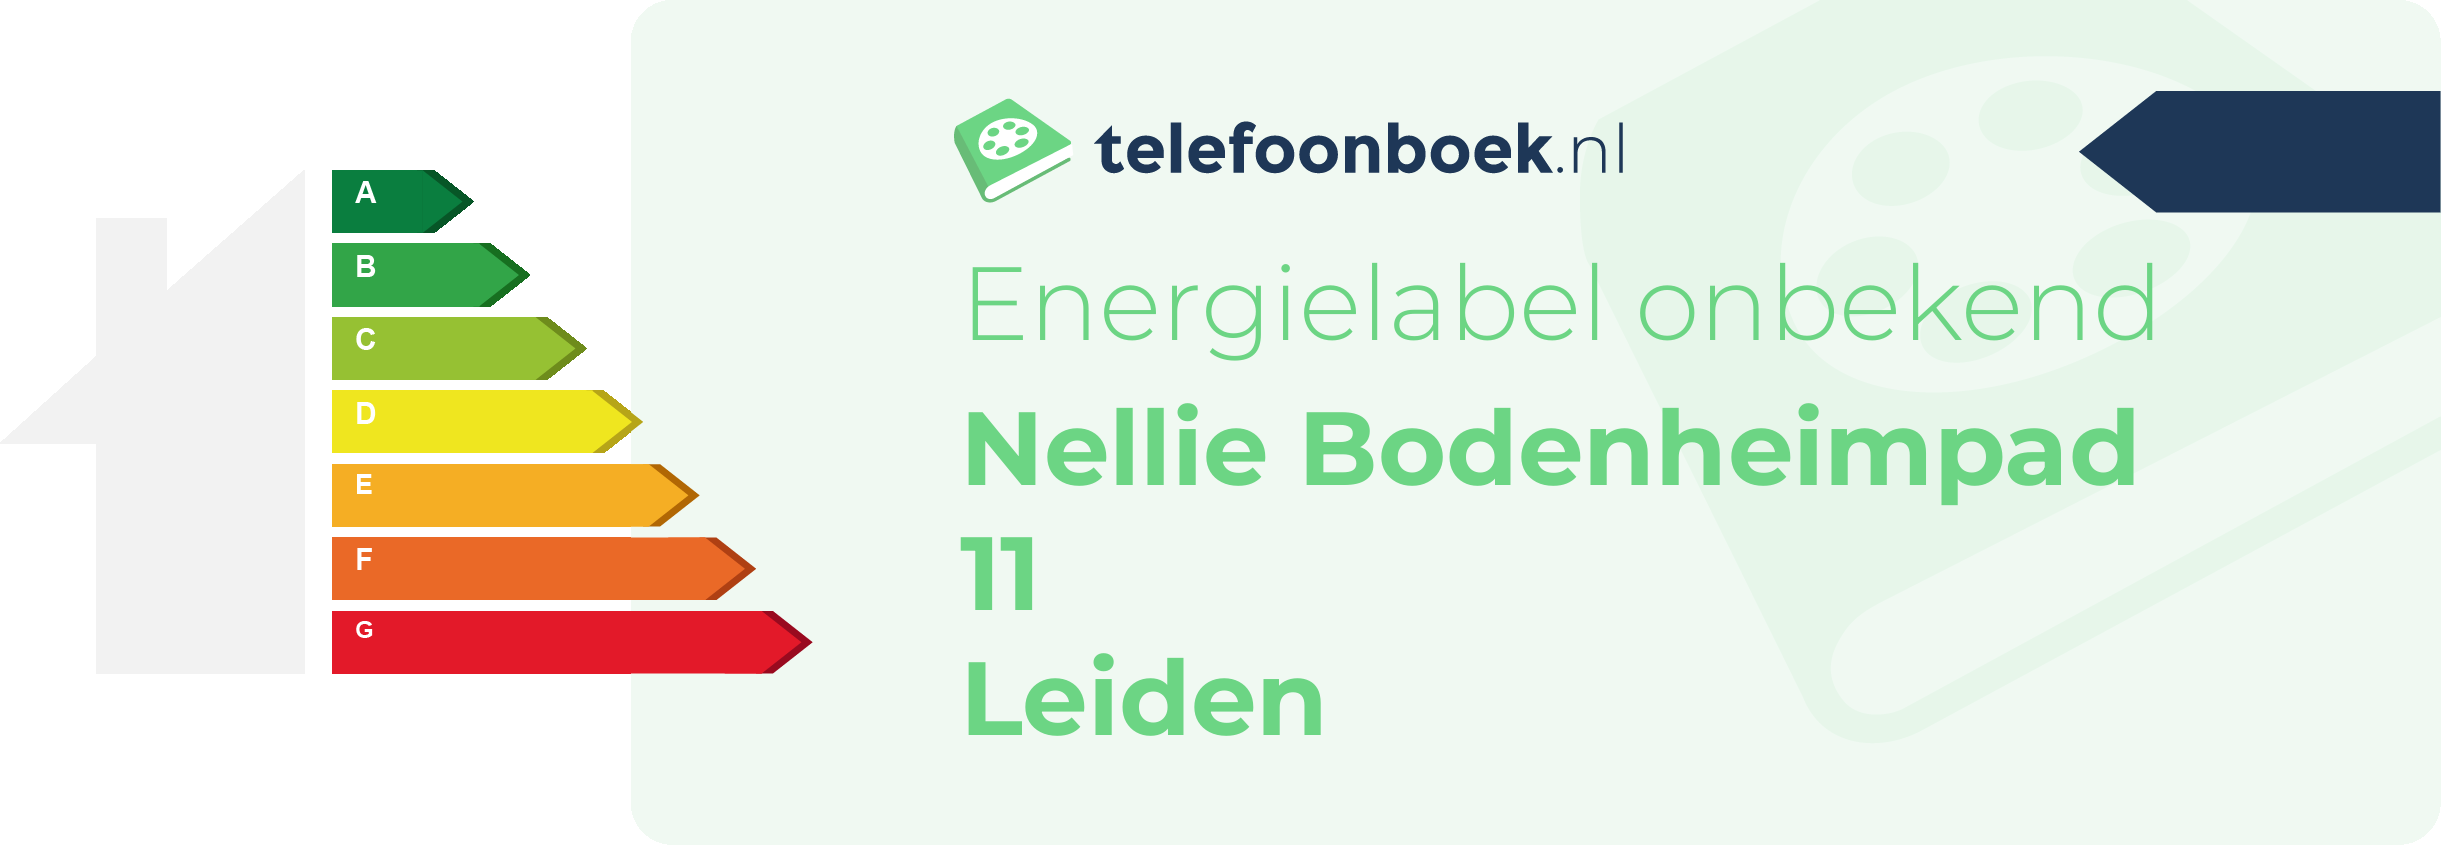 Energielabel Nellie Bodenheimpad 11 Leiden